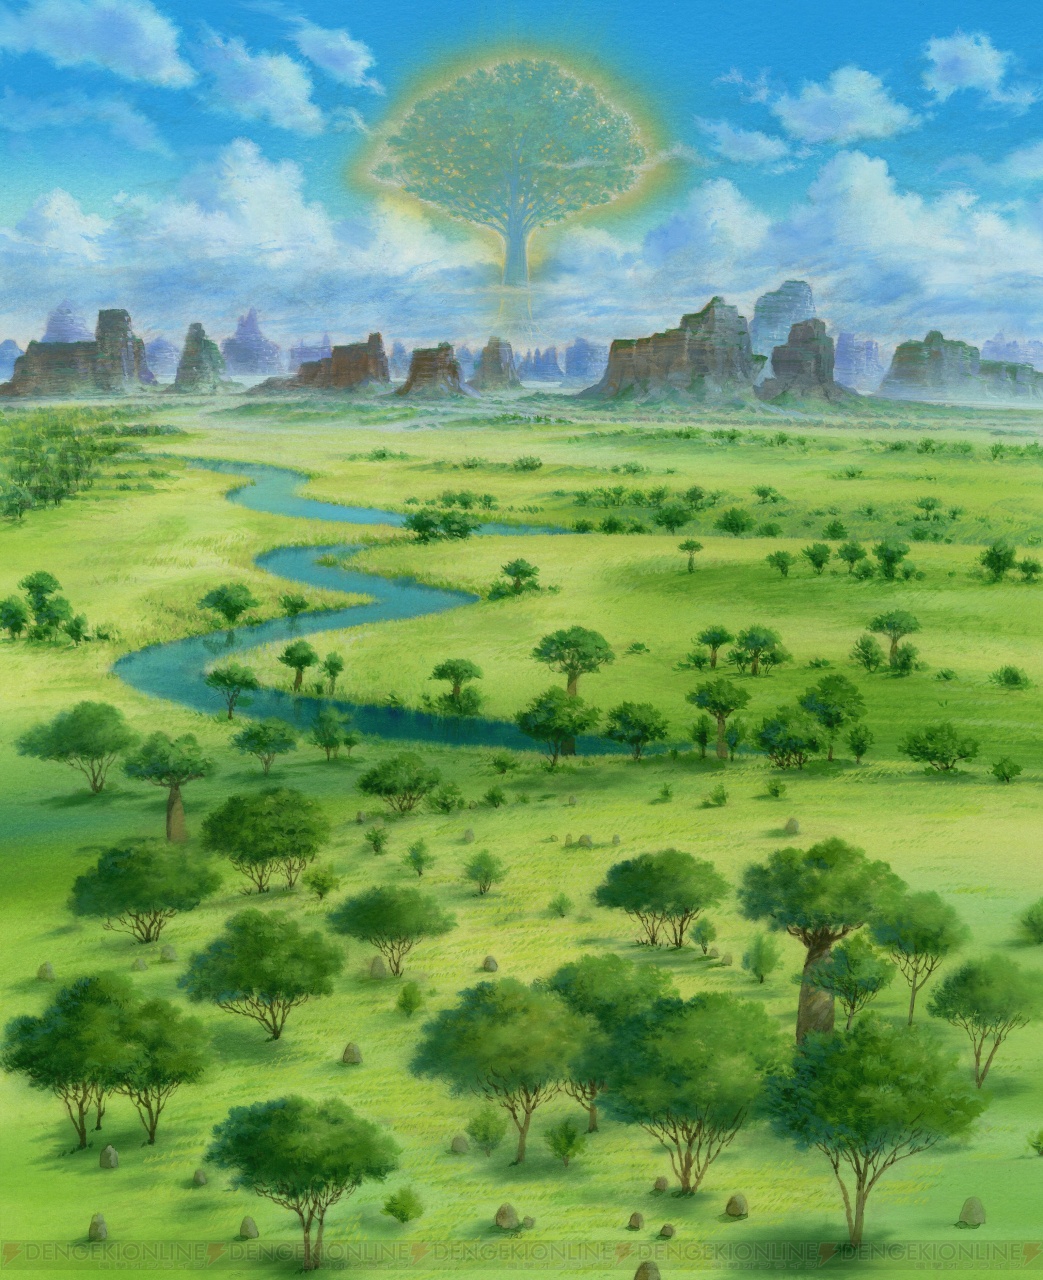 世界樹の迷宮iv 伝承の巨神 の新情報が公開 ラピュタ の山本二三さんが幻想的な世界を描く 電撃オンライン